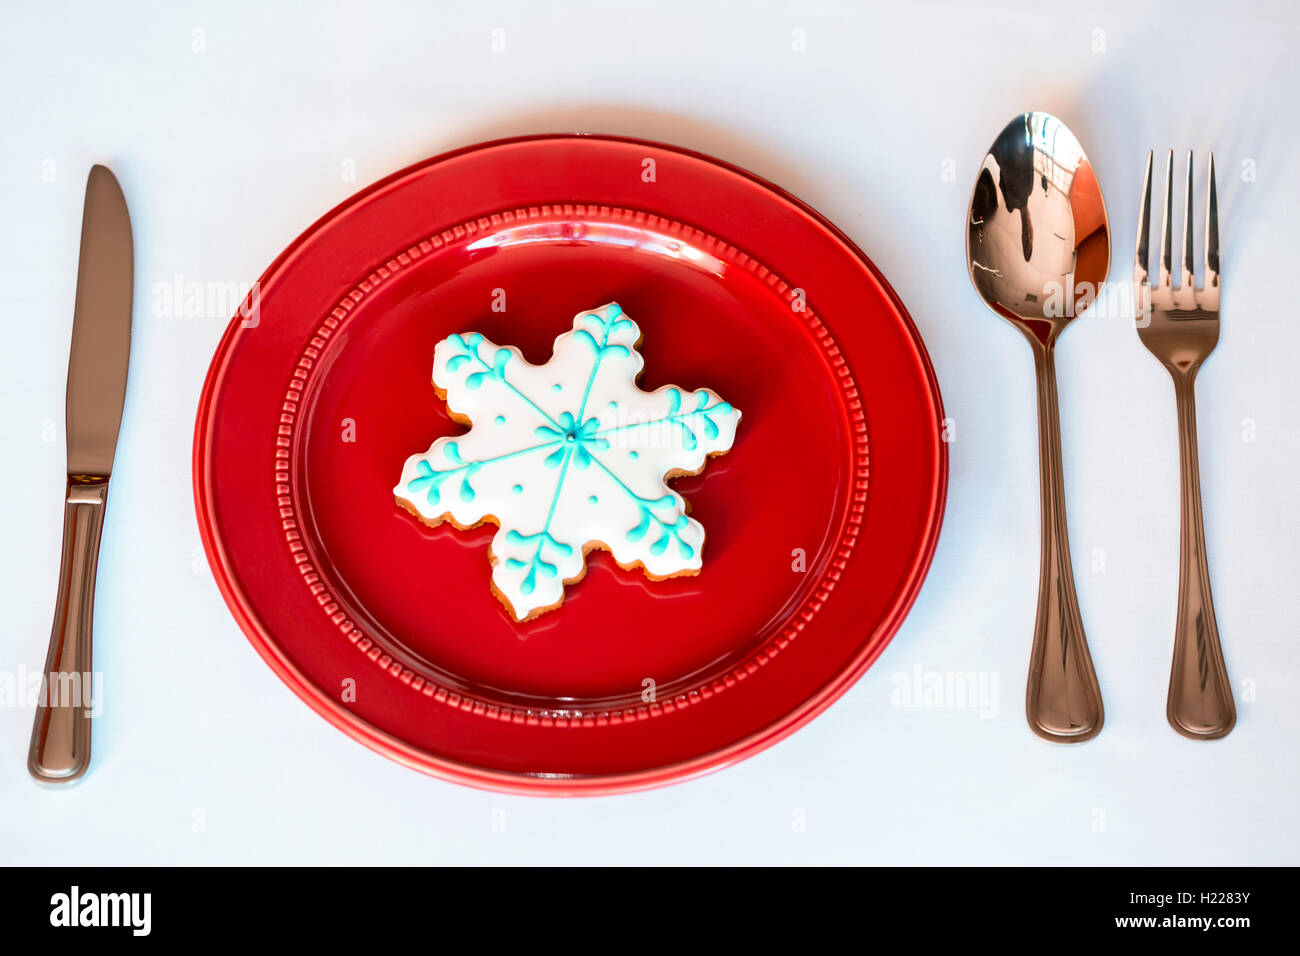 Noël arrière-plan - élégante plaque rouge avec les cookies et la cuillère, fourchette, couteau. Banque D'Images